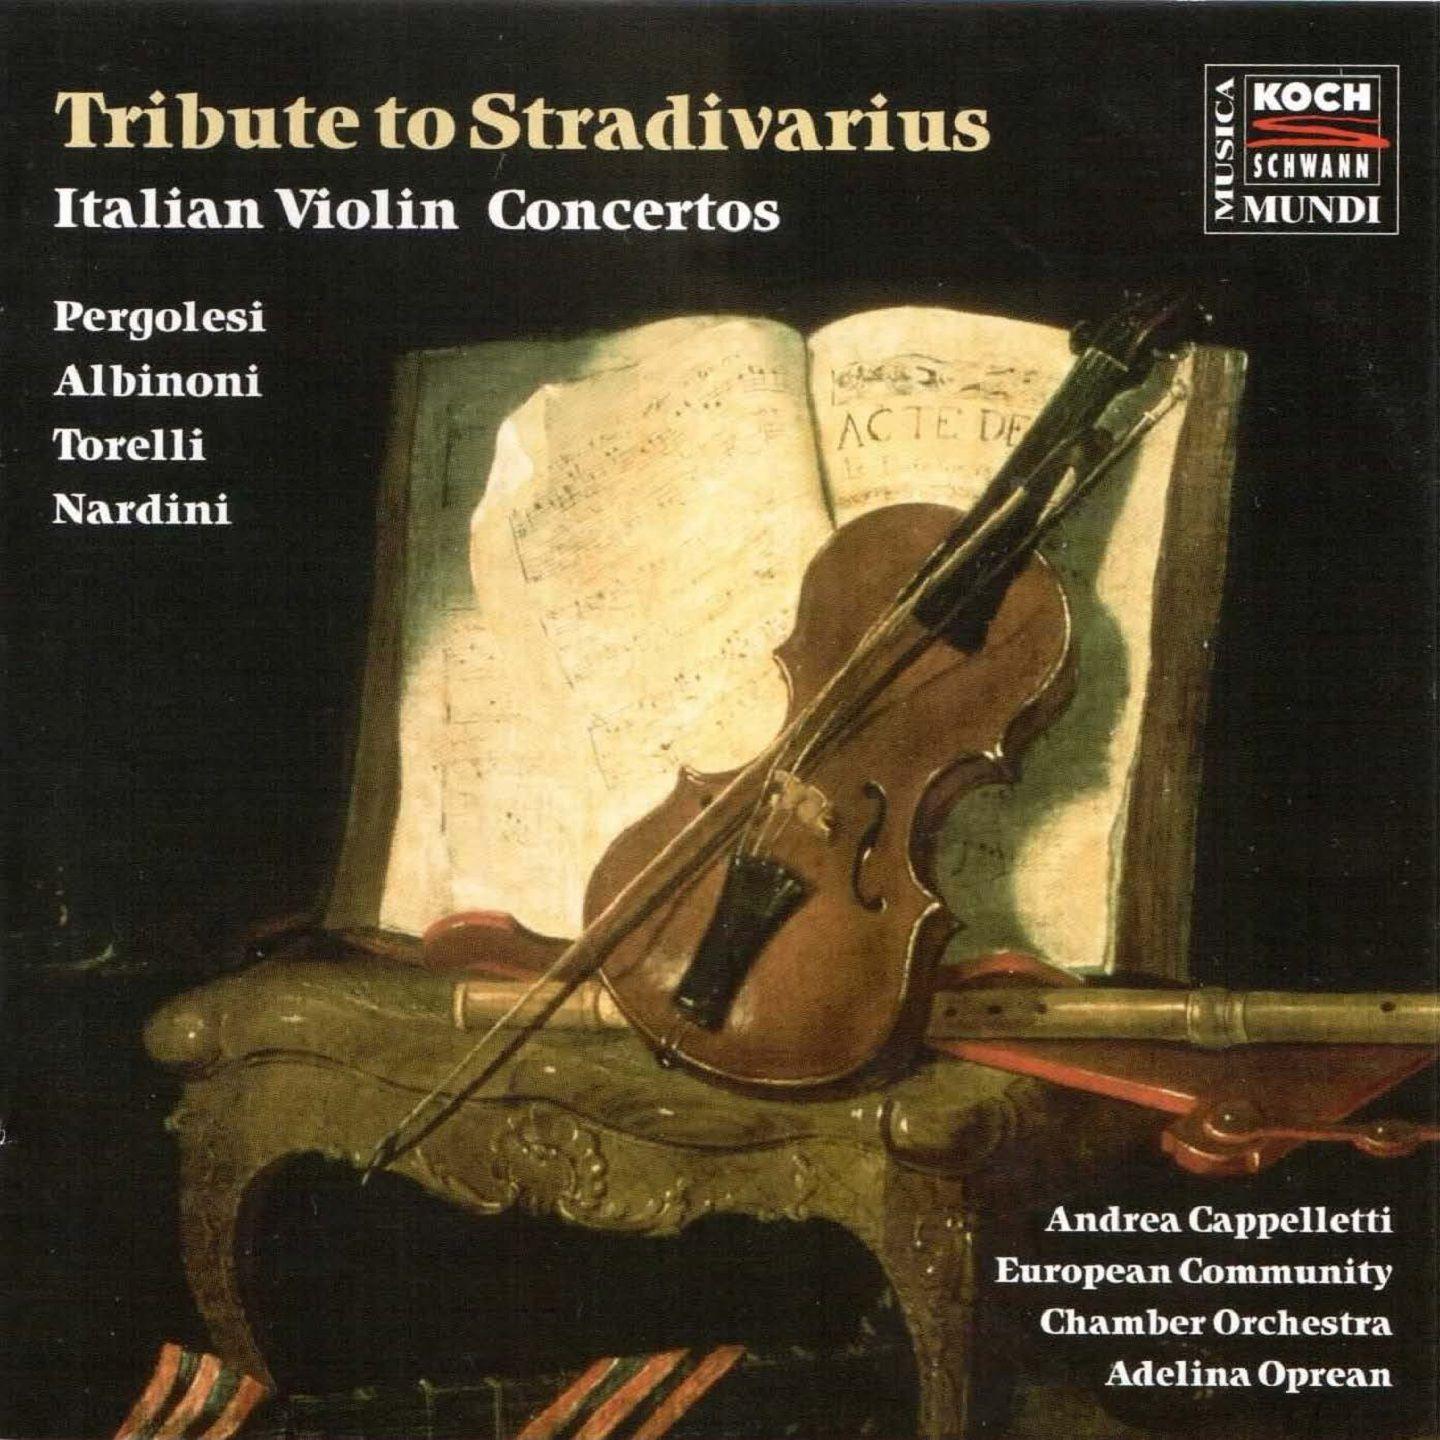 Violin Concerto in F Major, Op. 1 No.3: II. Adagio